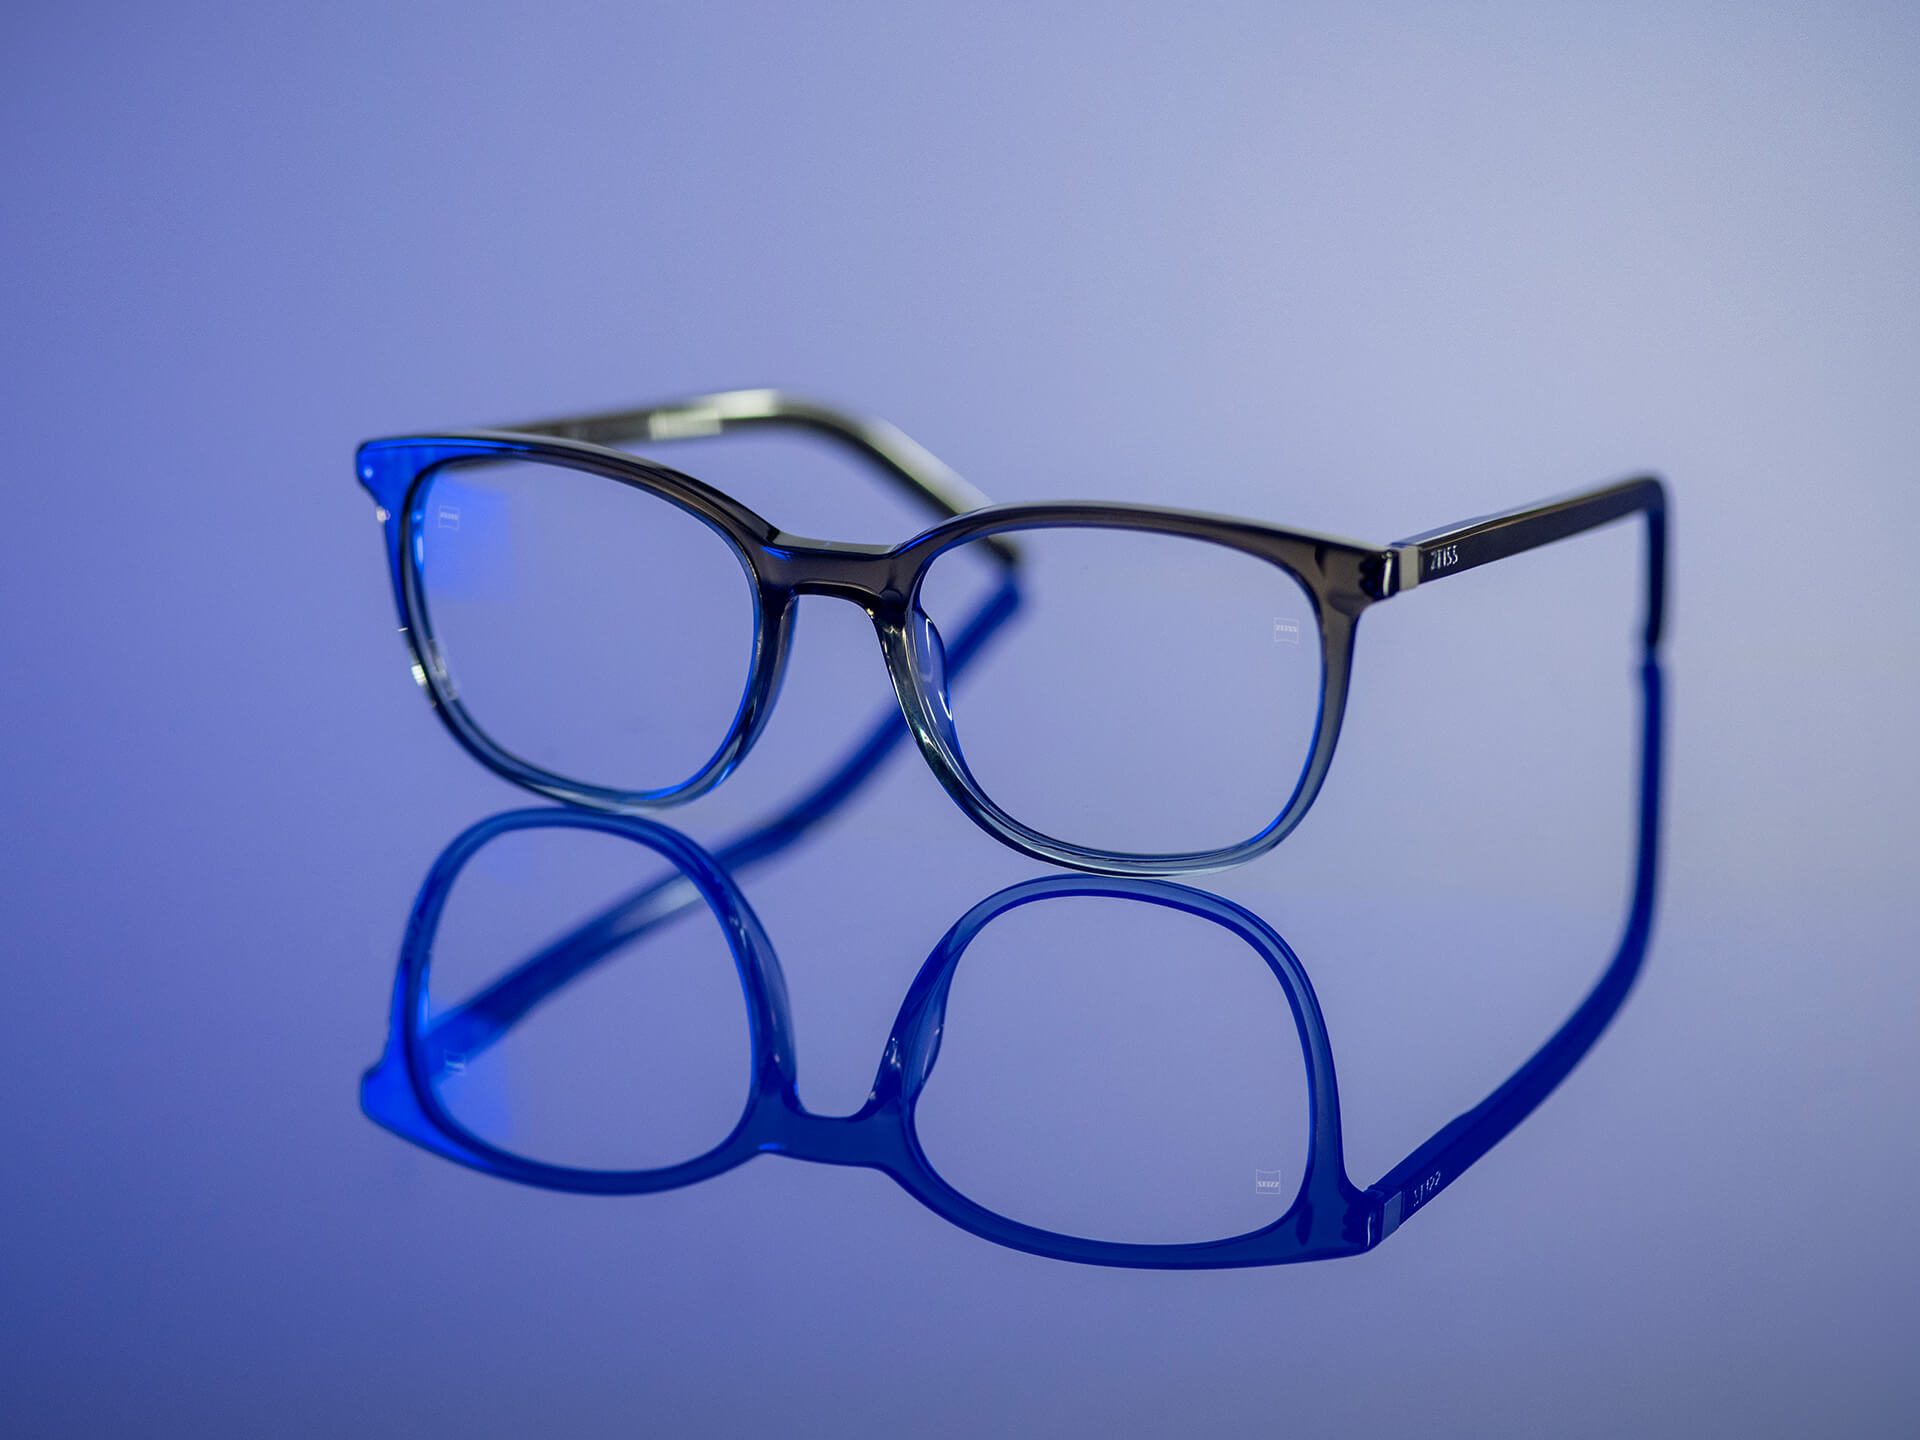 Glasögon som kan ses i ett blåaktigt ljus och har ZEISS-glas i BlueGuard-material. Endast en mycket liten blåaktig reflex syns på glasen.